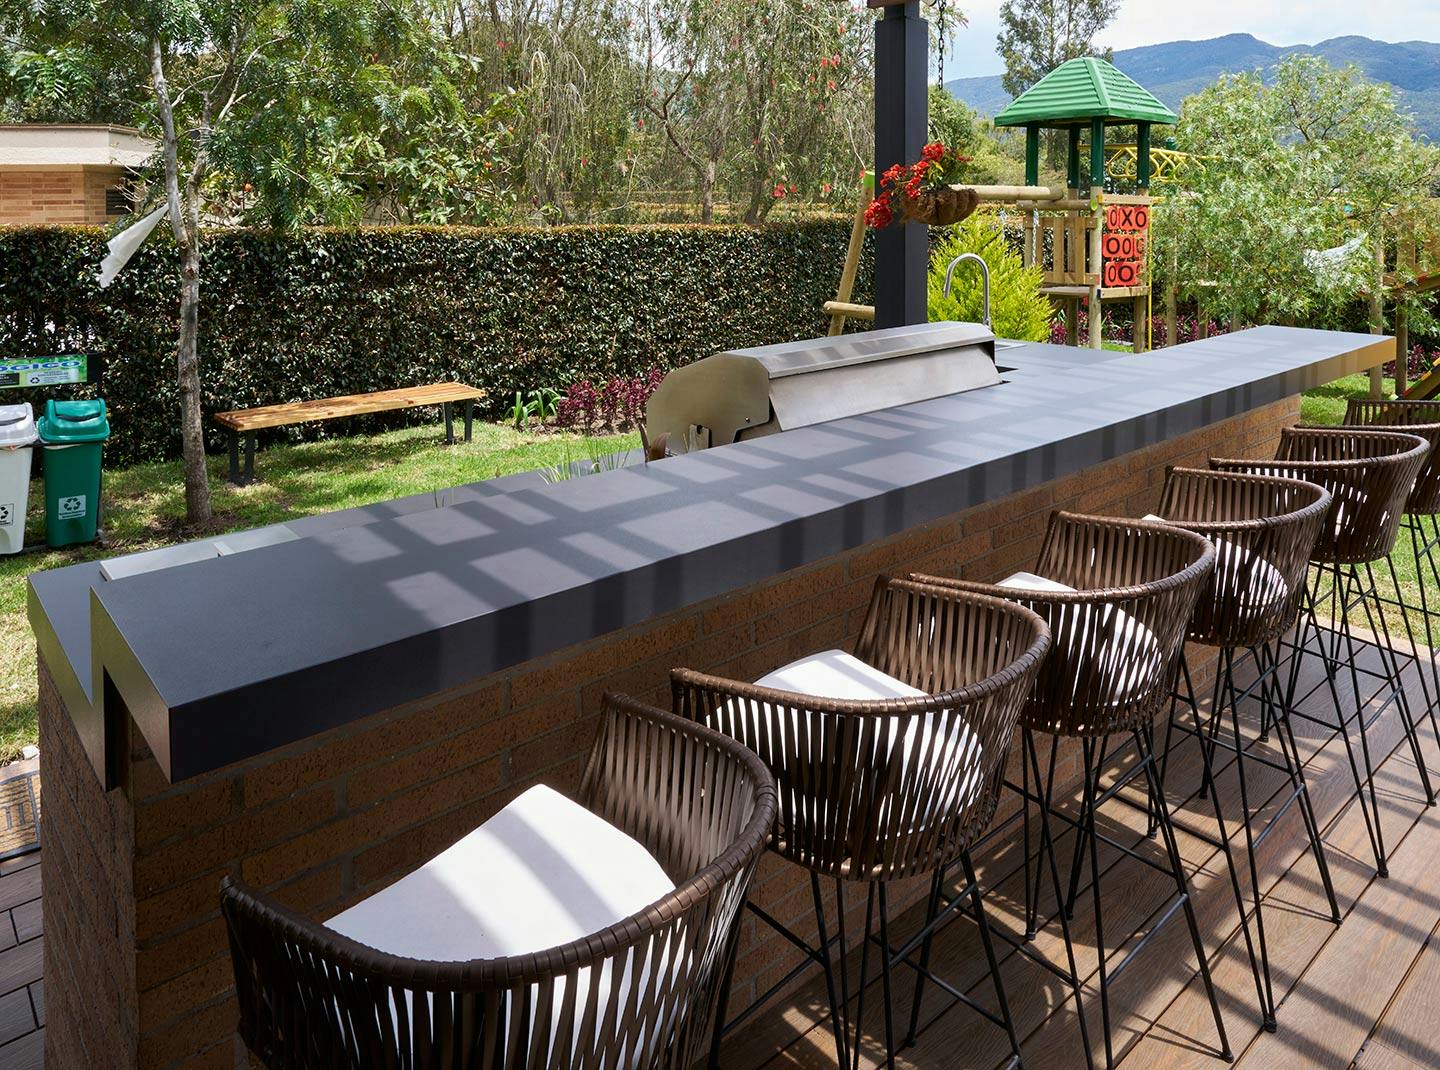 Numero immagine 44 della sezione corrente di The perfect rustic outdoor kitchen with DKTN and Urban Bonfire di Cosentino Italia